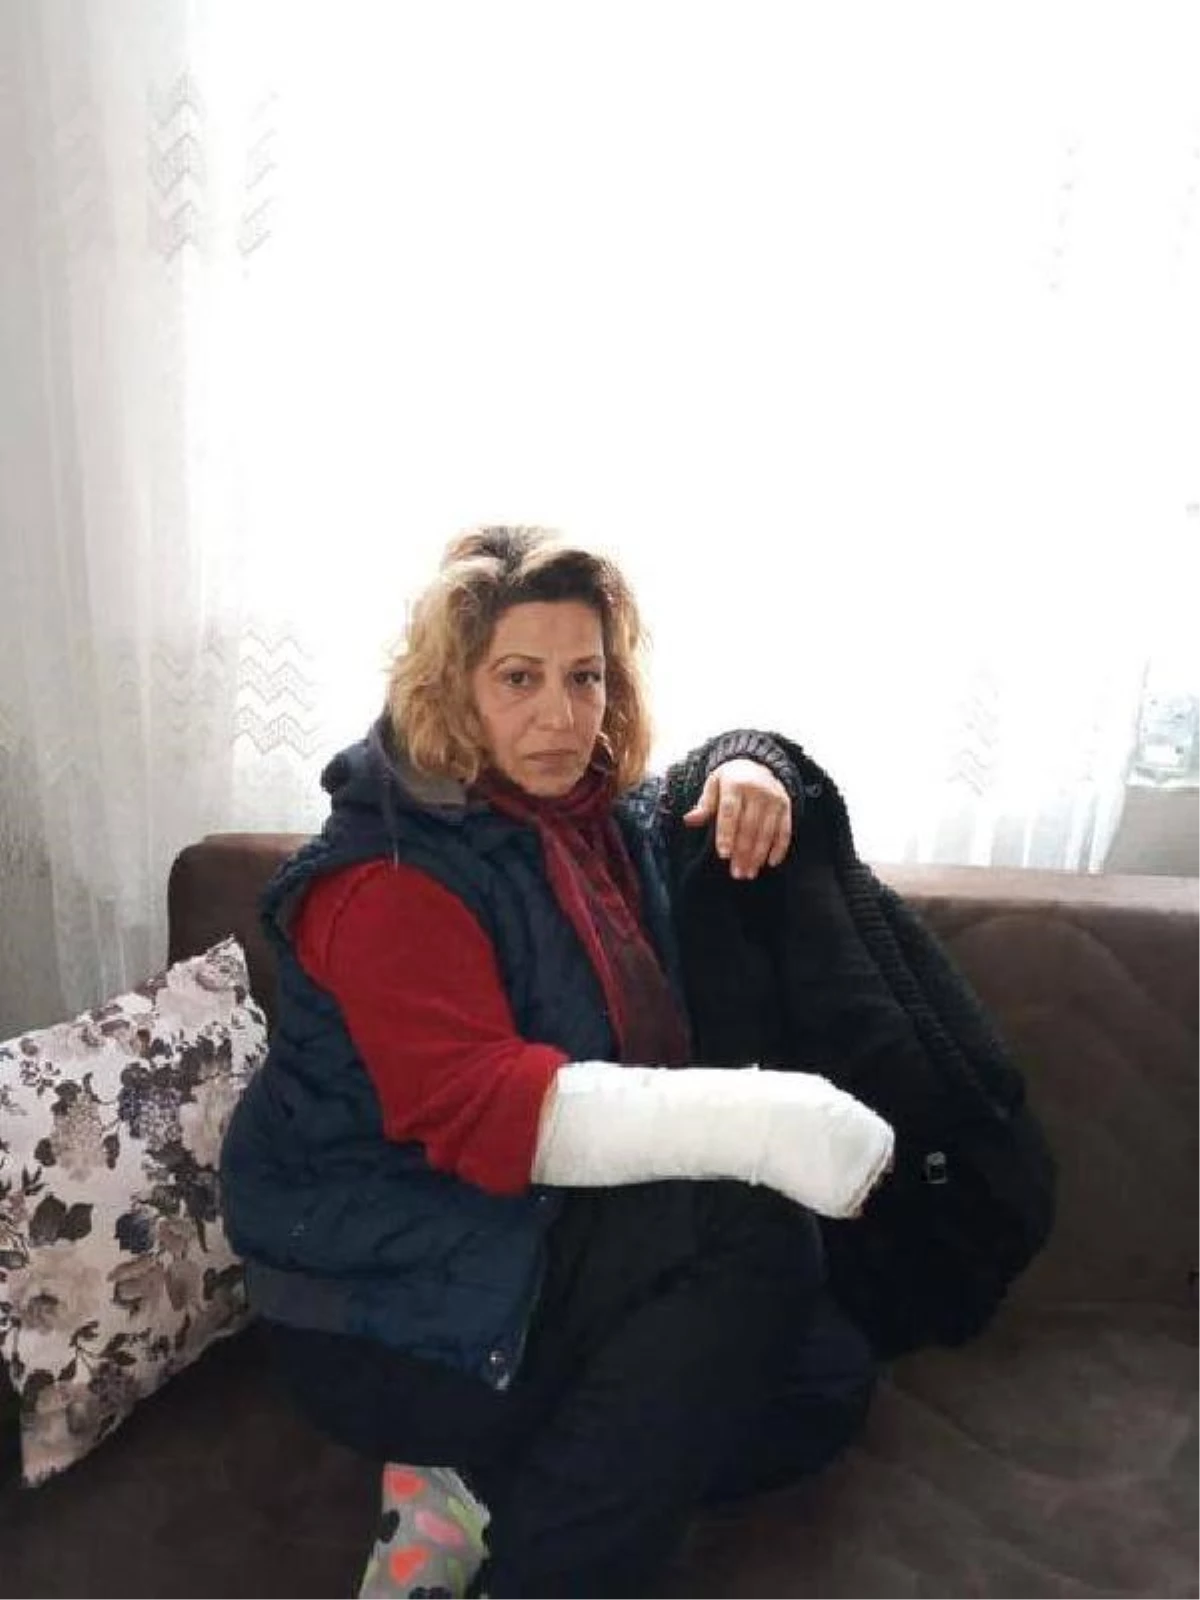 Köpeklerin saldırısından kaçarken düşen kadının el bileği kırıldı